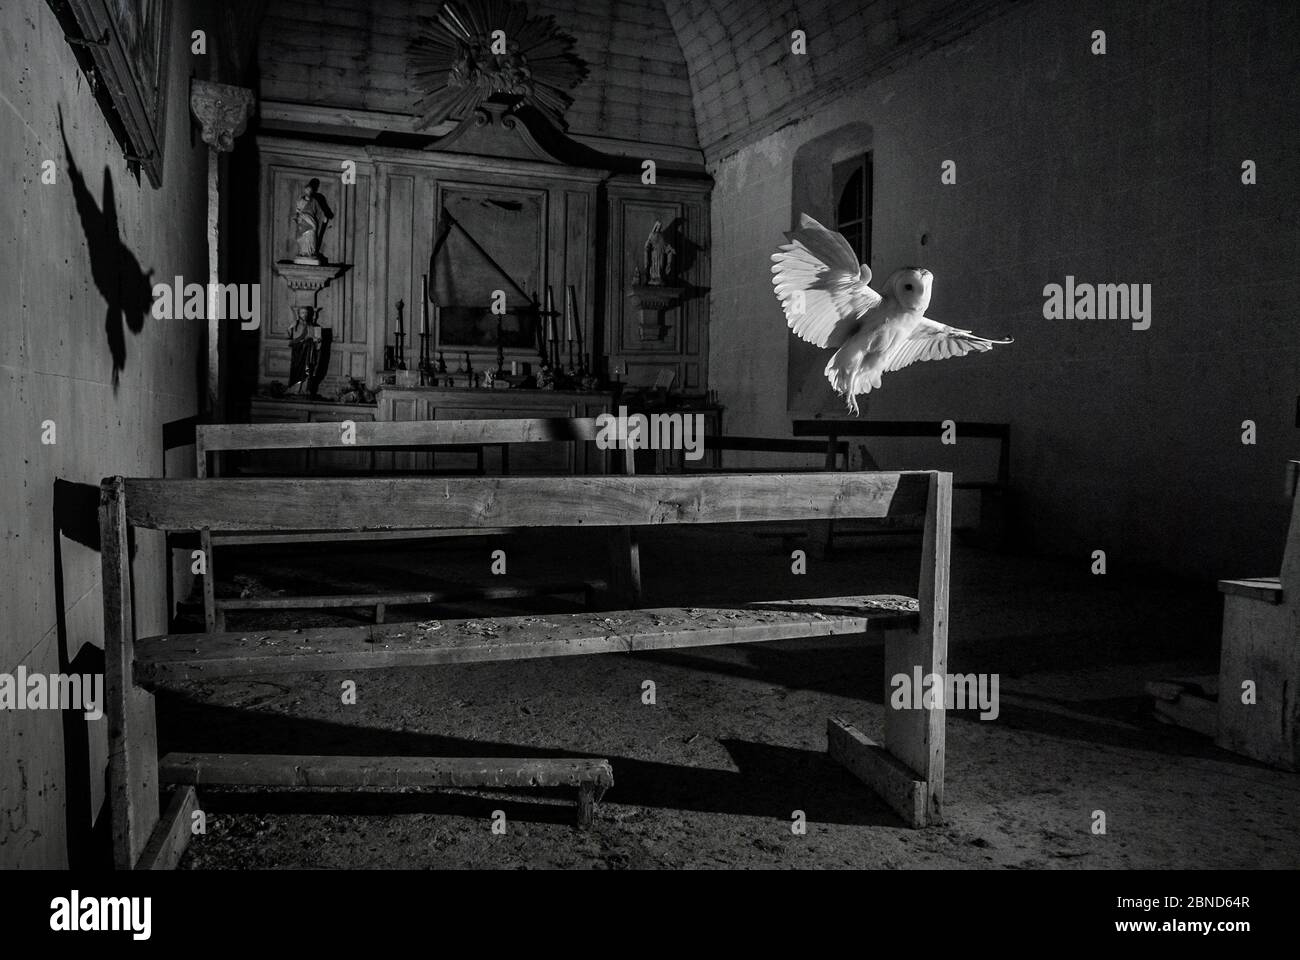 Hibou de la grange (Tyto alba) volant dans l'ancienne chapelle la nuit, pris avec un piège infrarouge téléporté, Mayenne, pays de Loire, France, novembre. Banque D'Images